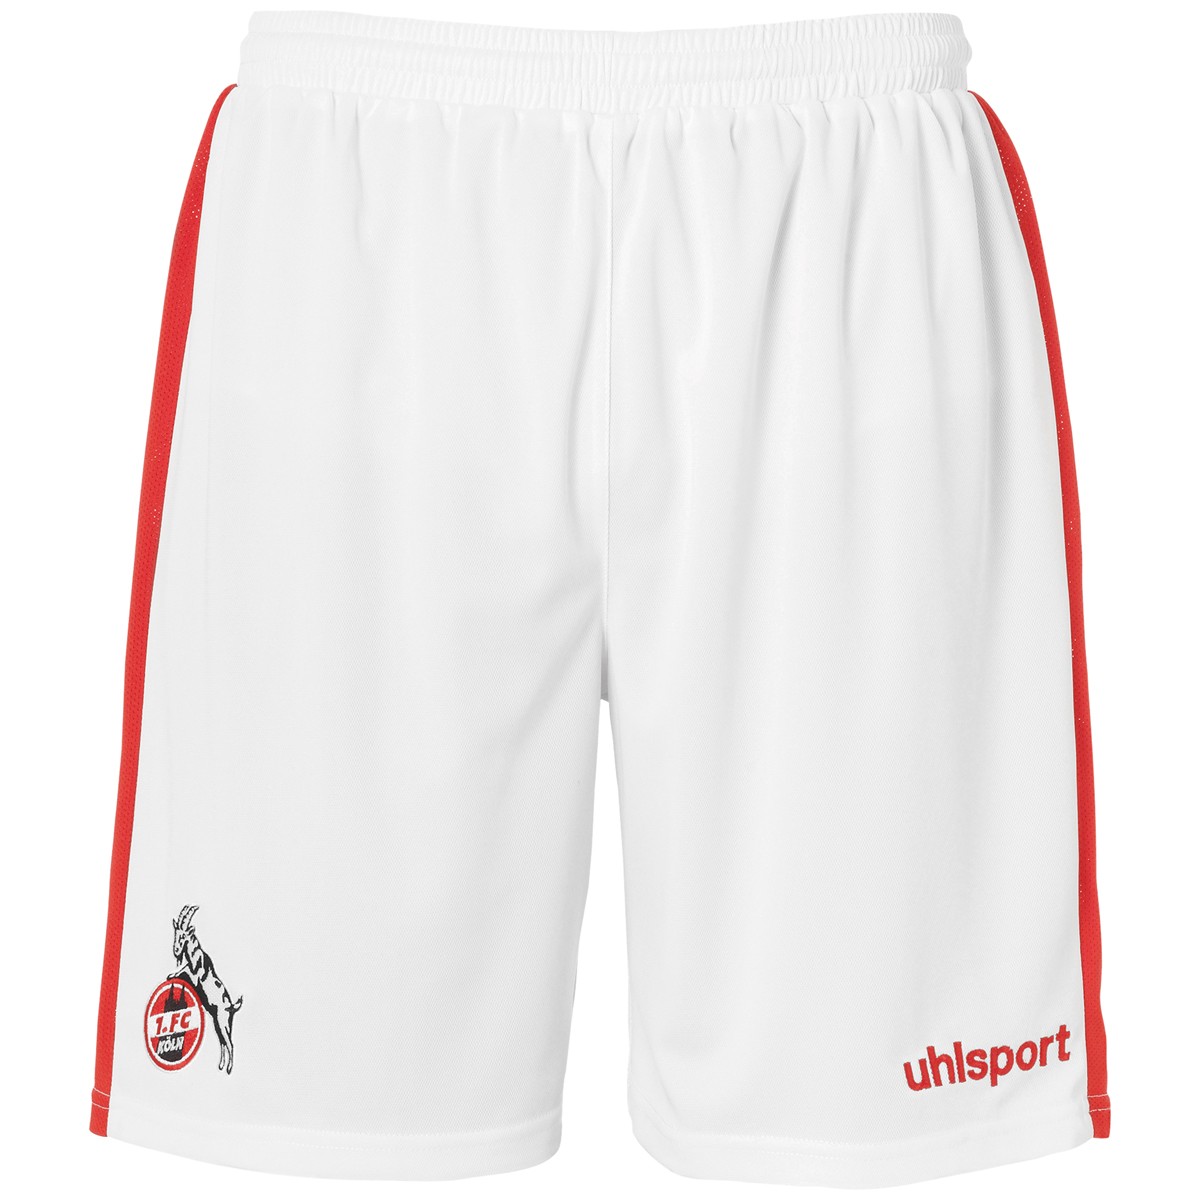 Uhlsport 1.FC Köln Sportswear Short grau Effzeh Sporthose Freizeit Gr S XXL 